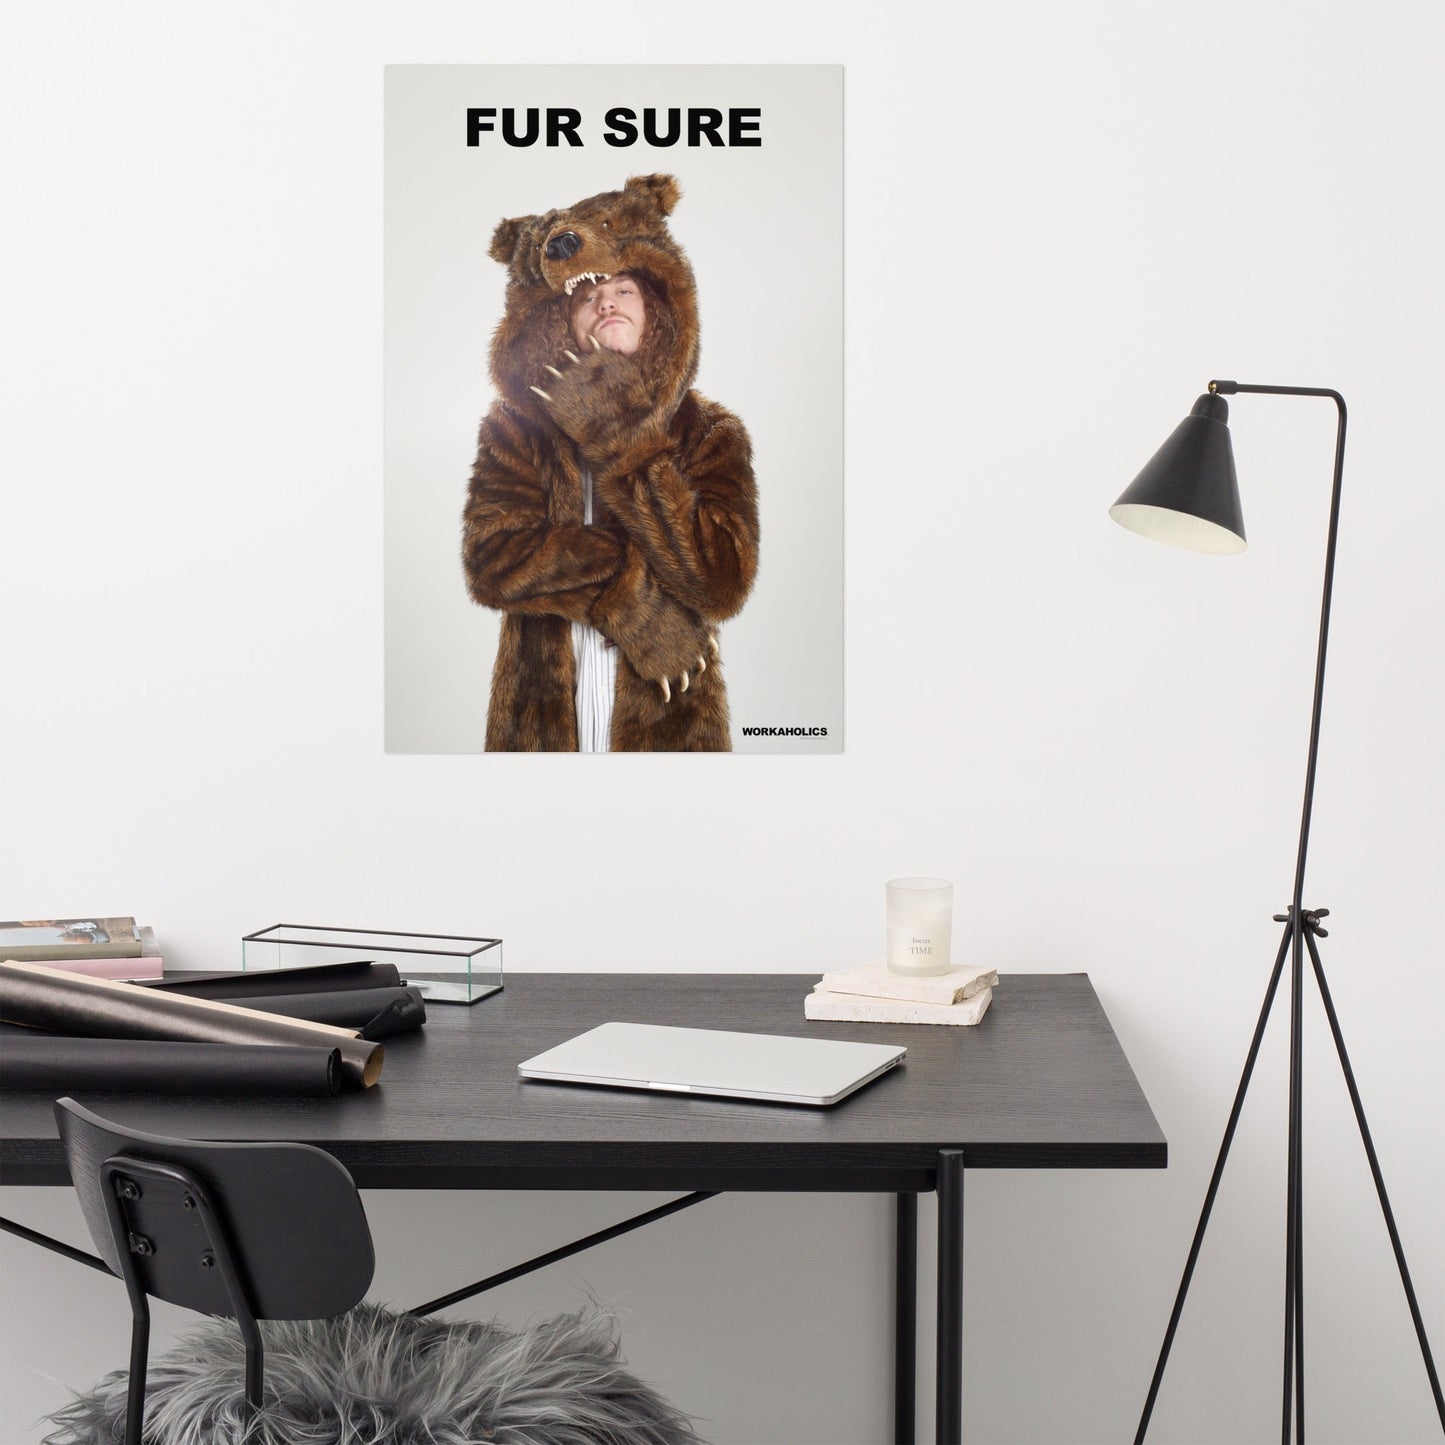 Workaholics "Fur Sure" Premium Poster - Paramount Shop